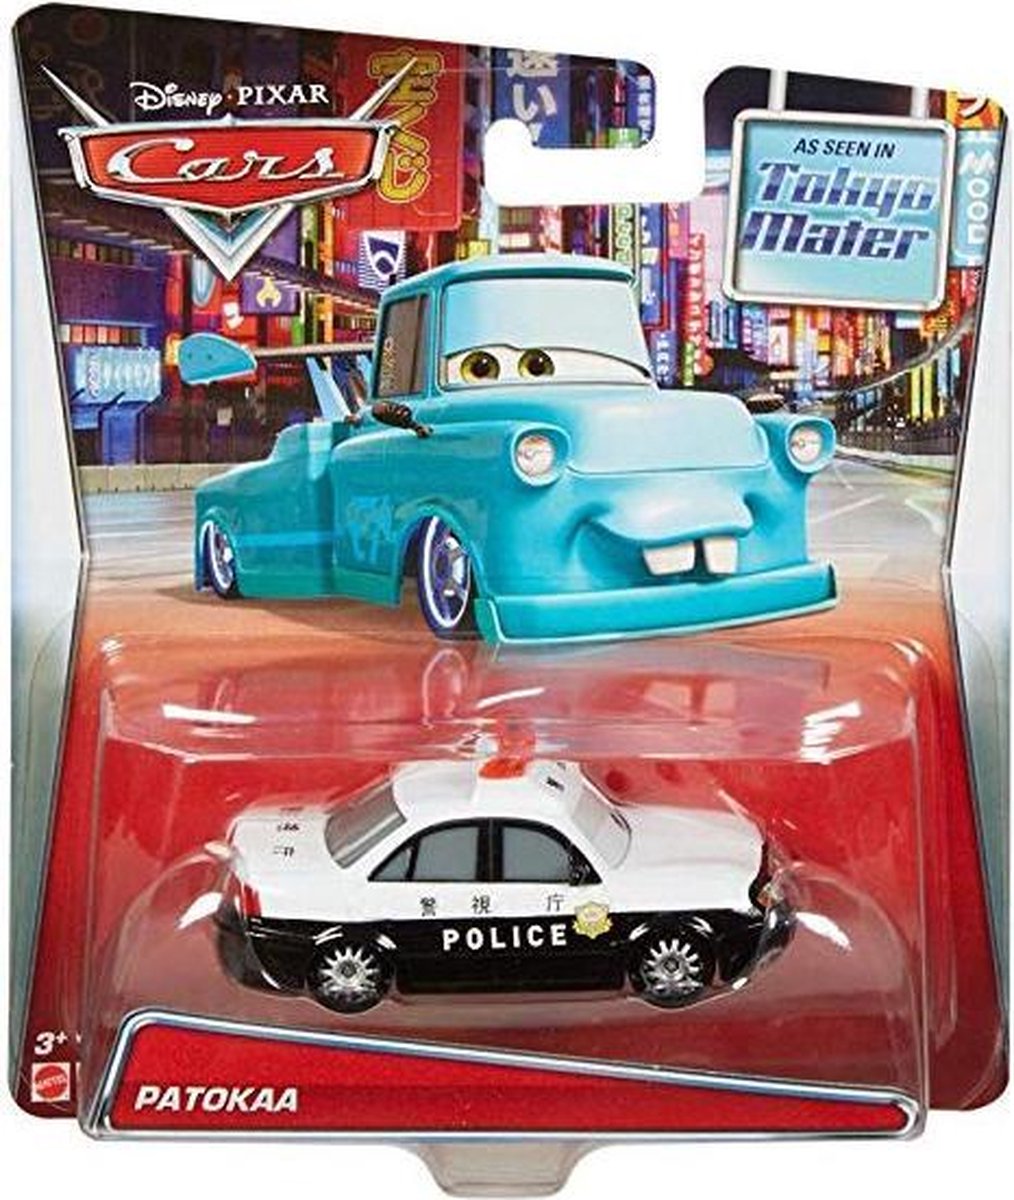 Disney Cars auto Patokaa politie - Mattel